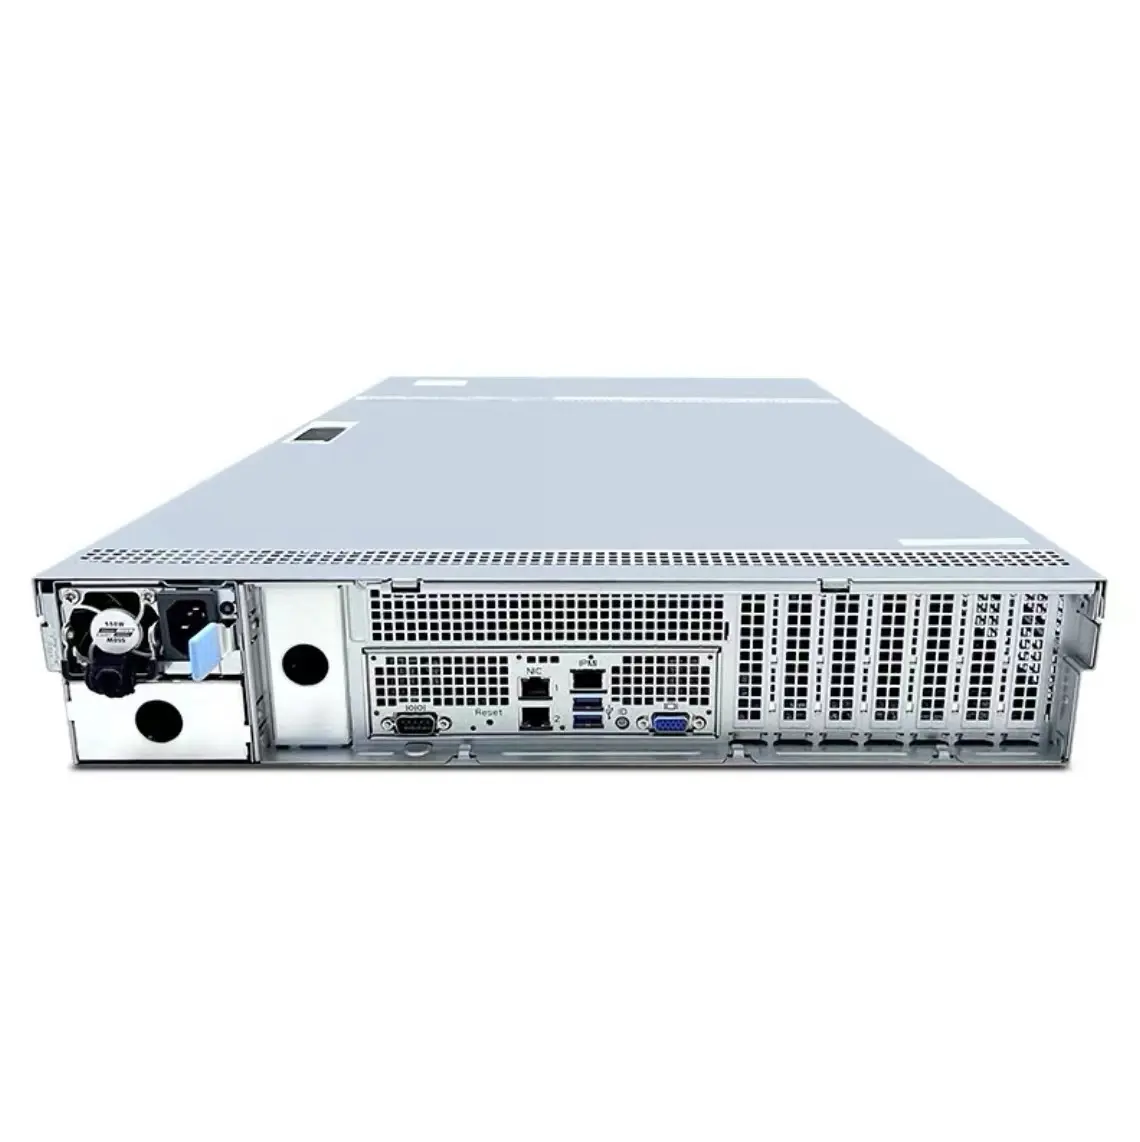 Inforever 5280m5 2u sunucu rafı sonsuza sunucu yüksek performanslı NF5280M5 ağ sunucusu